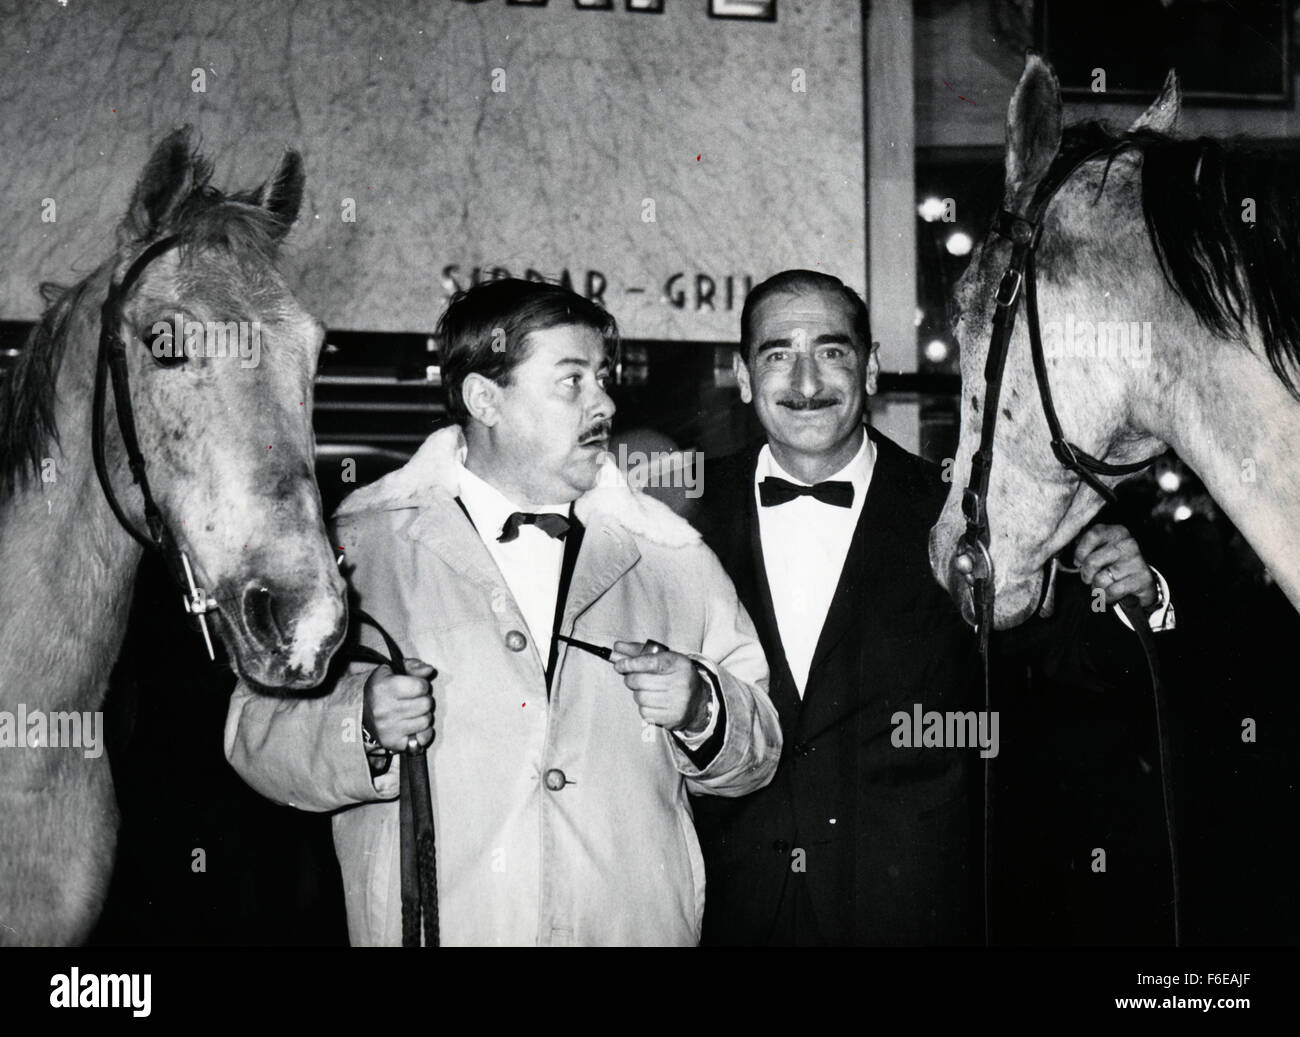 28. Oktober 1959 - fand gestern Abend im Ambassade Gaumont Theatre aus der Champs Elysee Paris, Frankreich - Paris-Premiere von "Jument Verte" (grüne Stute), eine Verfilmung Marcel Aymes Romans. Der Film der französischen Zensur "out of Bounds" für Jugendliche platziert zog eine große Attendence. Bild: FRANCIS BLANCHE (L) und der Clown ZAVATTA, zwei der Hauptfiguren des Films, fotografiert mit zwei Stuten in der Halle des Theaters. (Bild Kredit: C KEYSTONE USA Bilder) Stockfoto